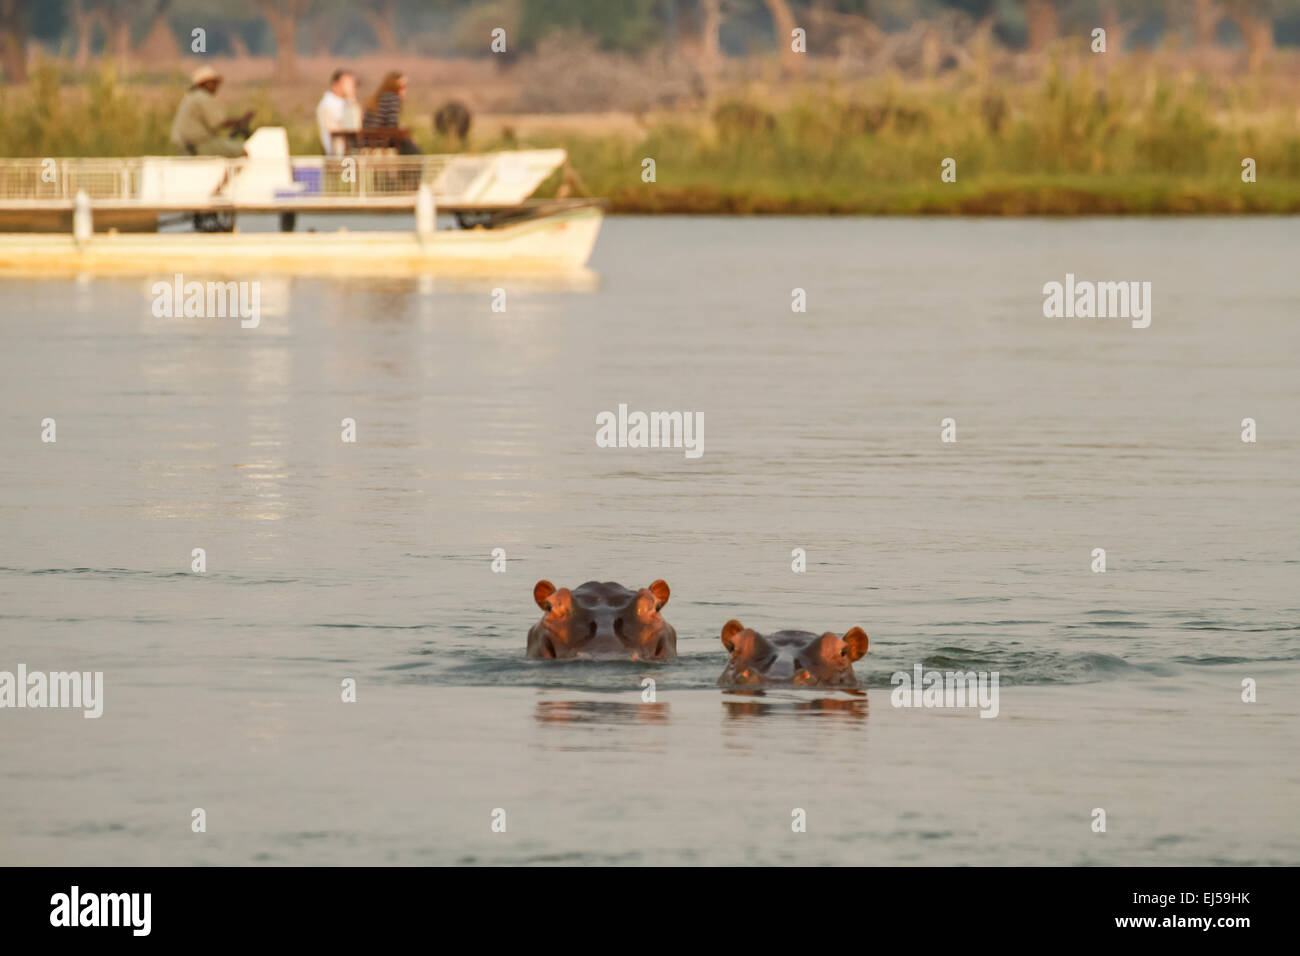 Deux hippopotames baignade dans la rivière Zambezi safari avec un bateau dans l'arrière-plan, à Lower Zambezi National Park, Zambie, Afrique Banque D'Images